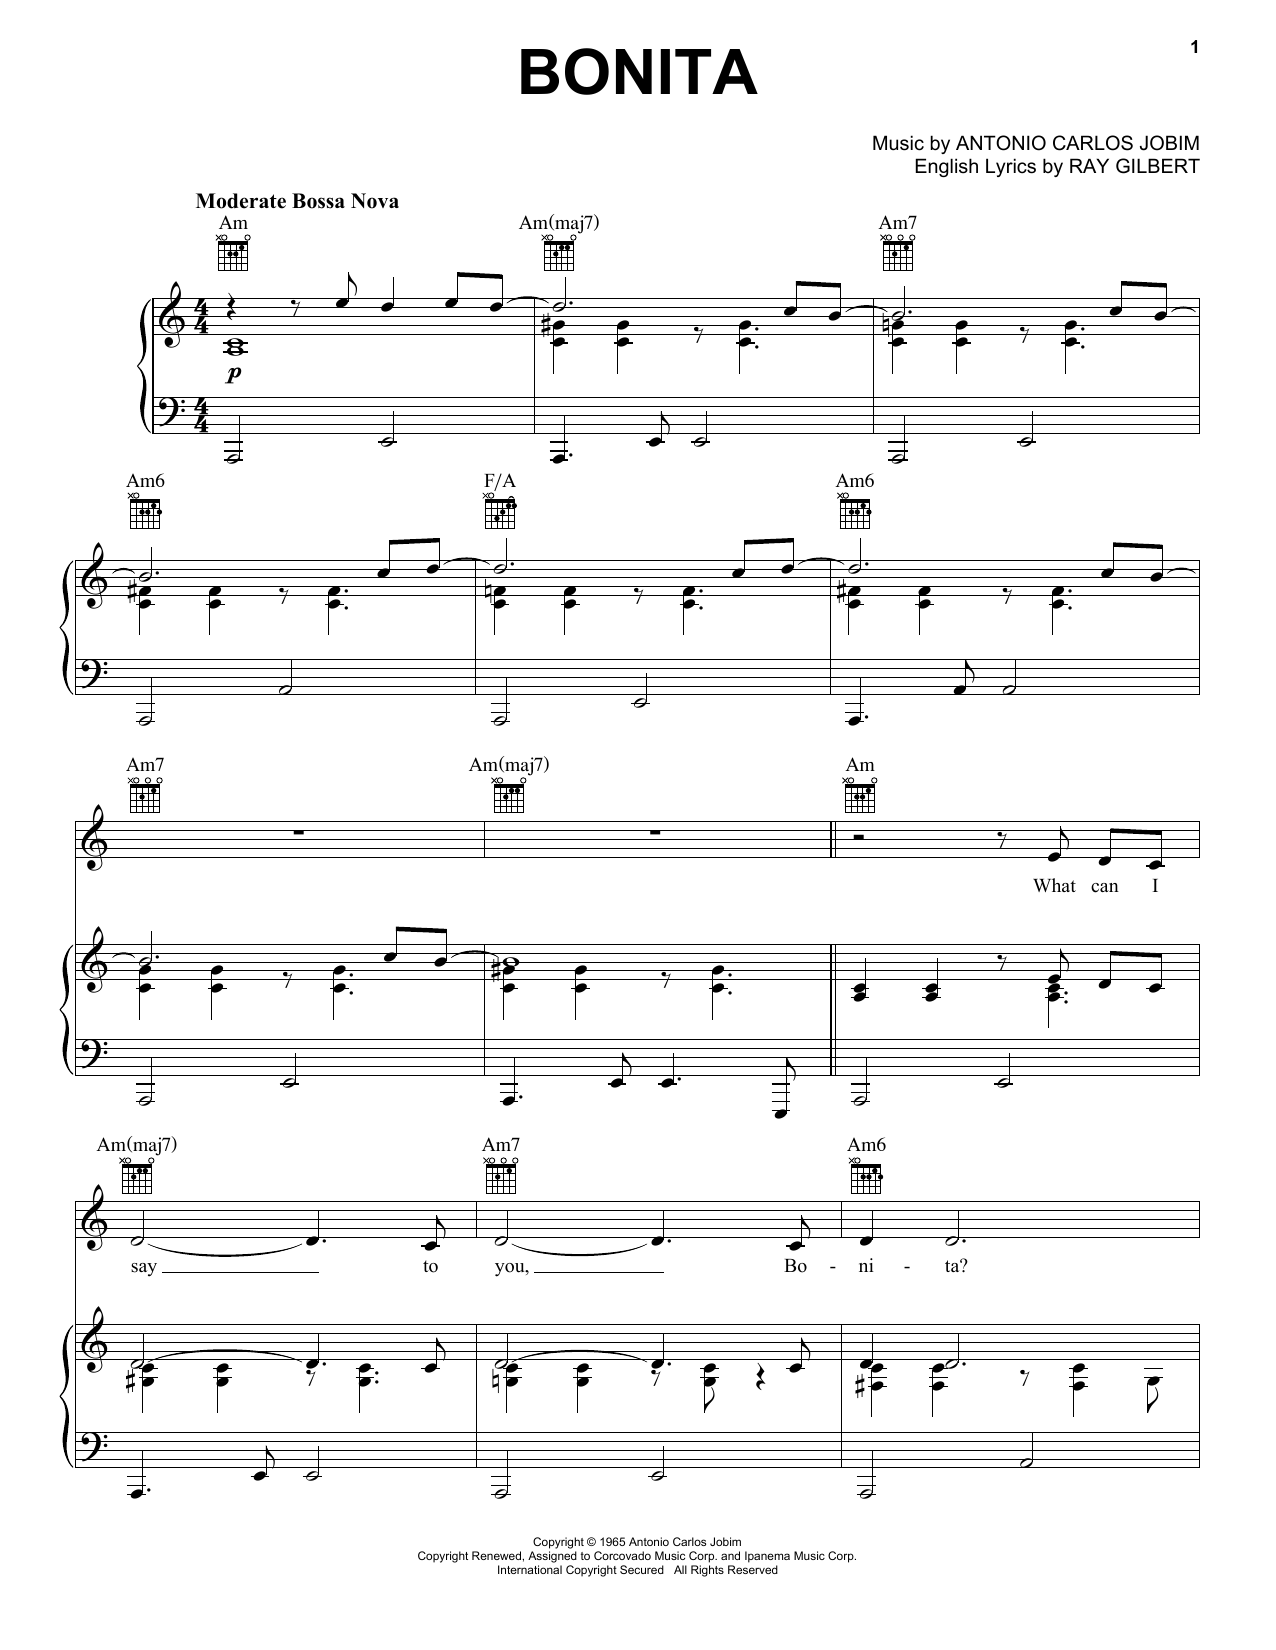 Antonio Carlos Jobim Bonita Sheet Music Notes & Chords for Real Book – Melody & Chords - Download or Print PDF